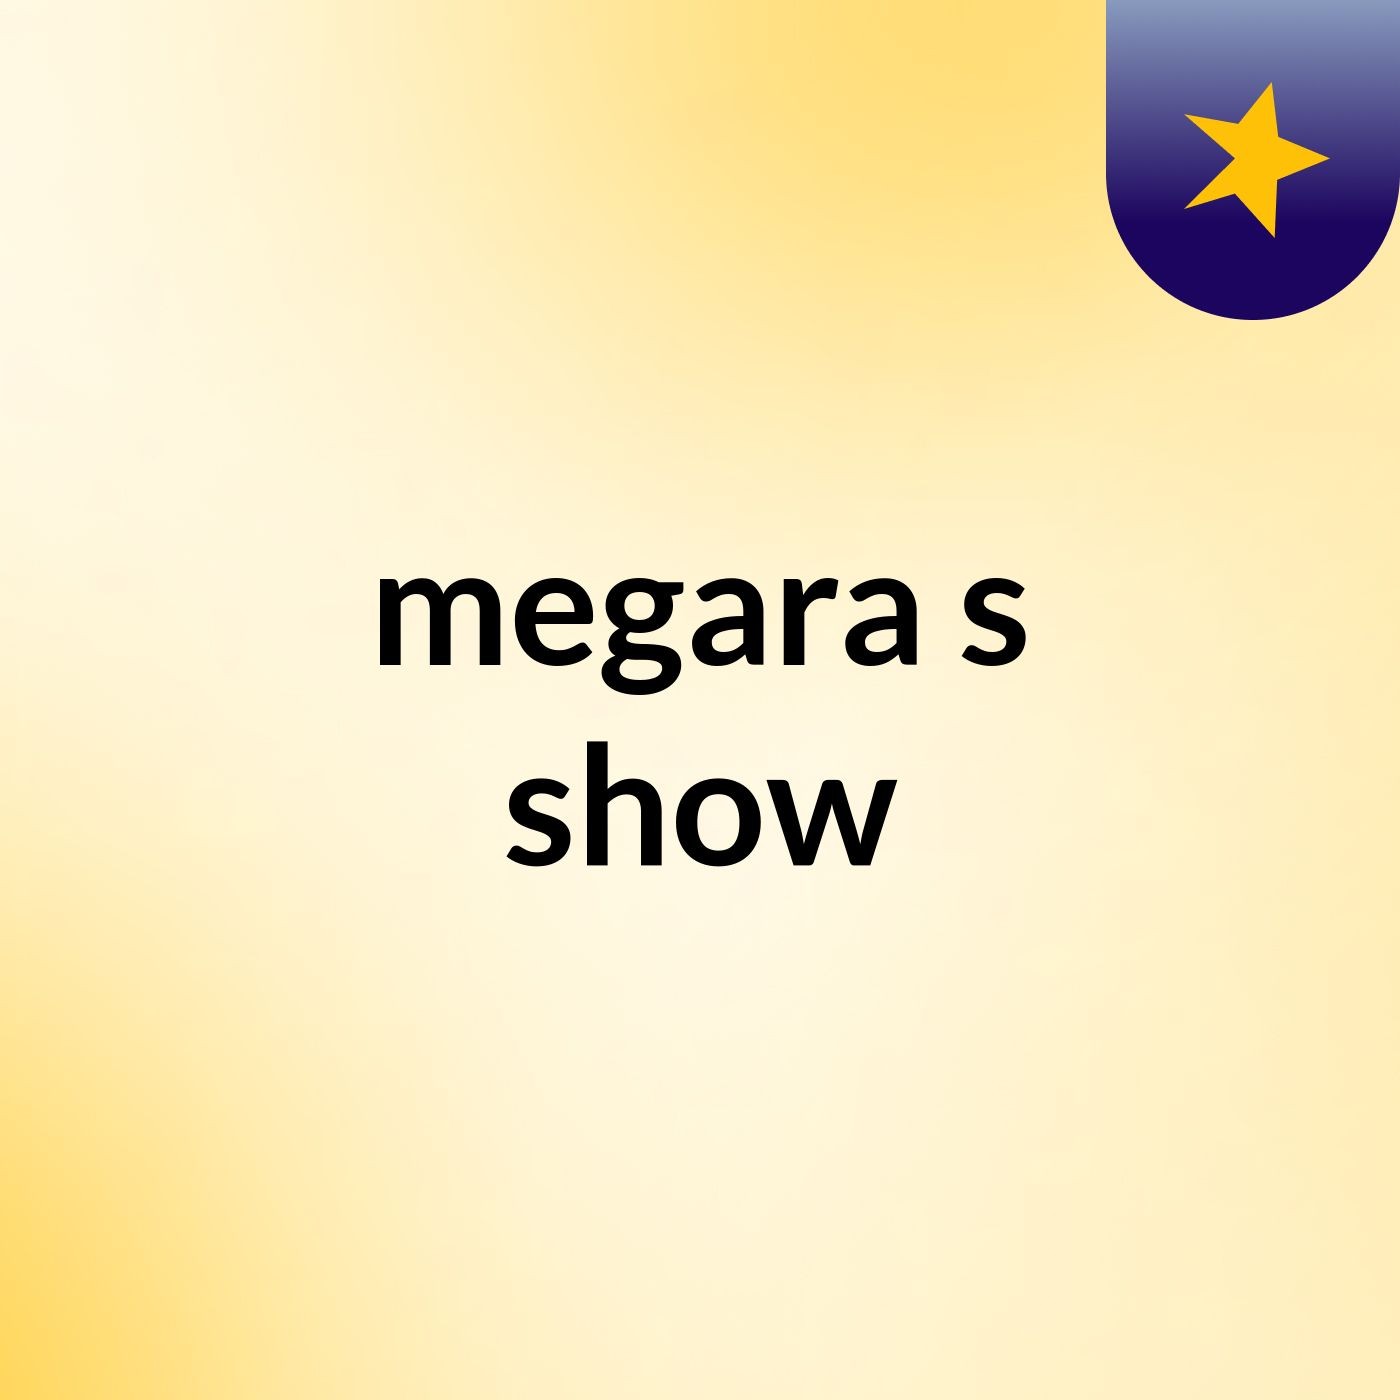 megara's show